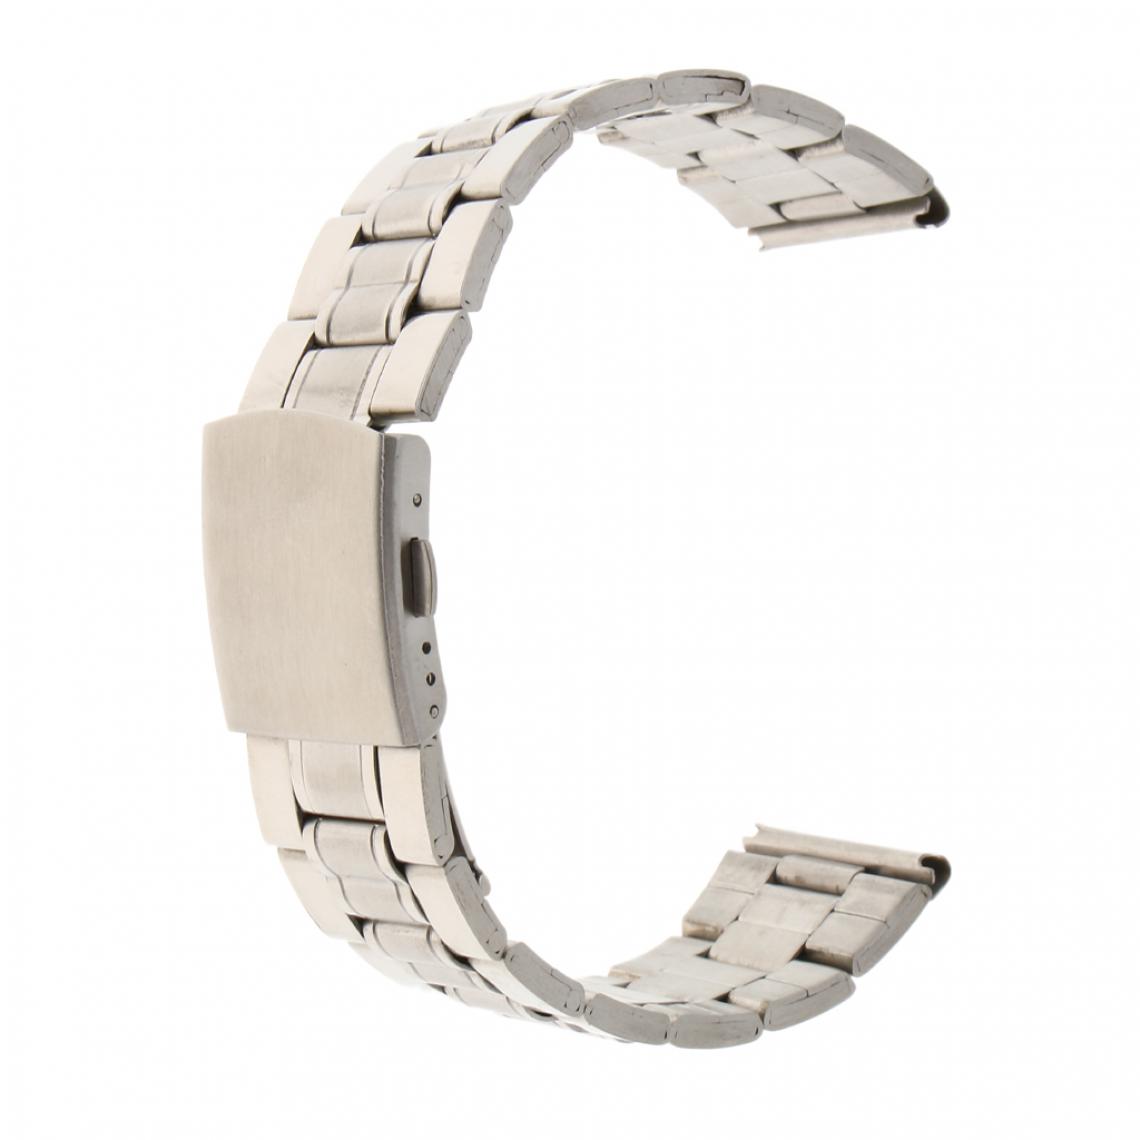 marque generique - Bande de montre pour homme solide en acier inoxydable avec boucle déployante en argent 22mm - Accessoires montres connectées